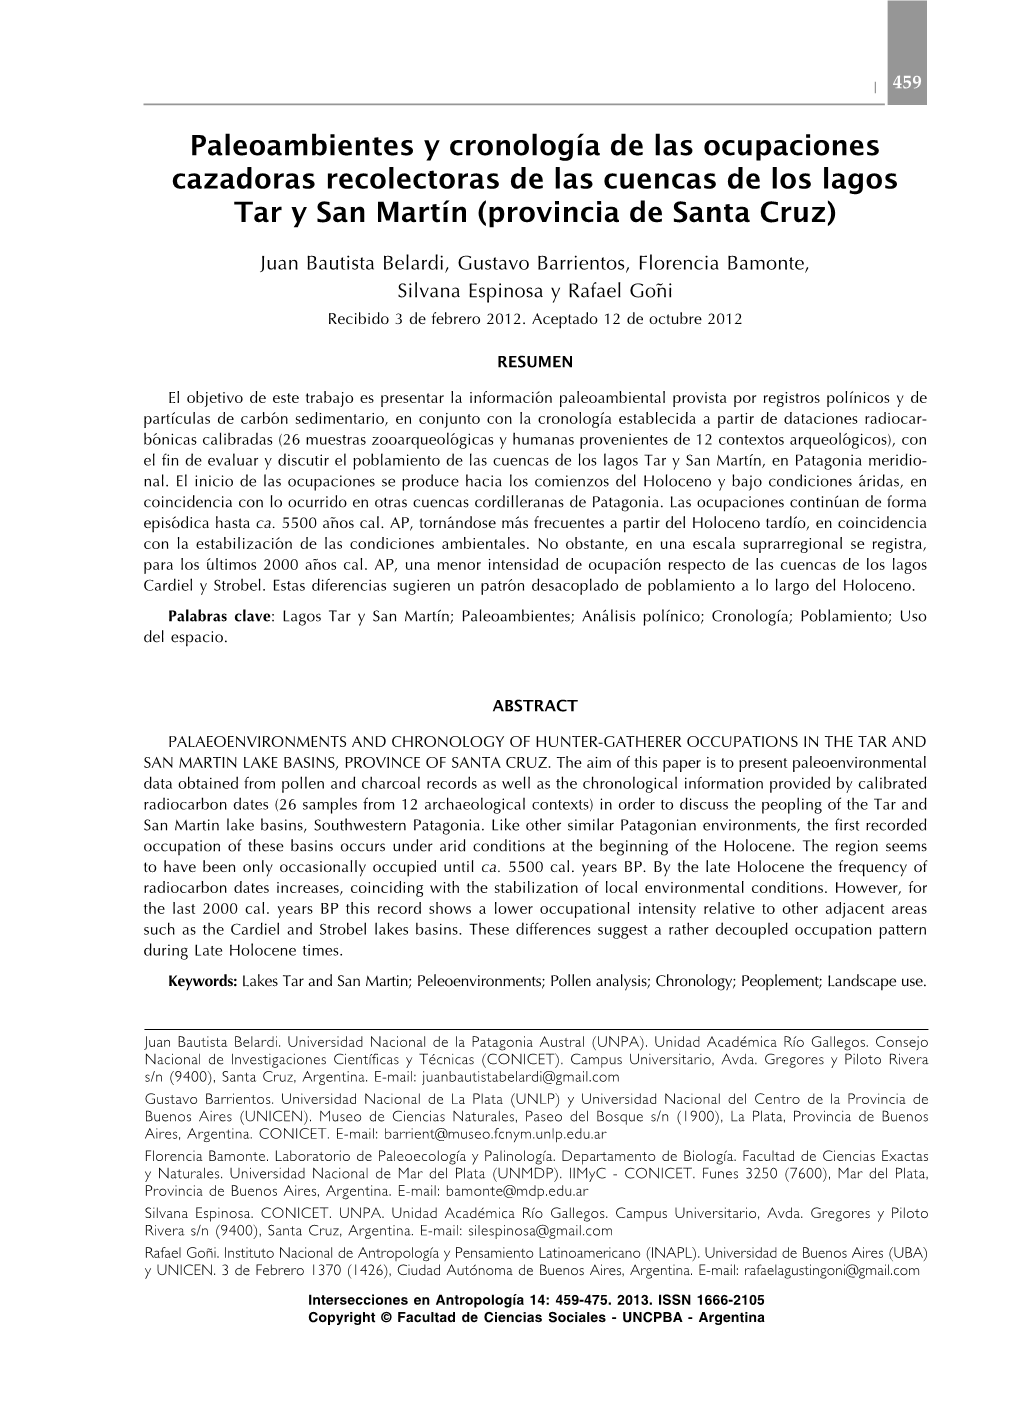 Paleoambientes Y Cronología De Las Ocupaciones Cazadoras Recolectoras De Las Cuencas De Los Lagos Tar Y San Martín (Provincia De Santa Cruz)